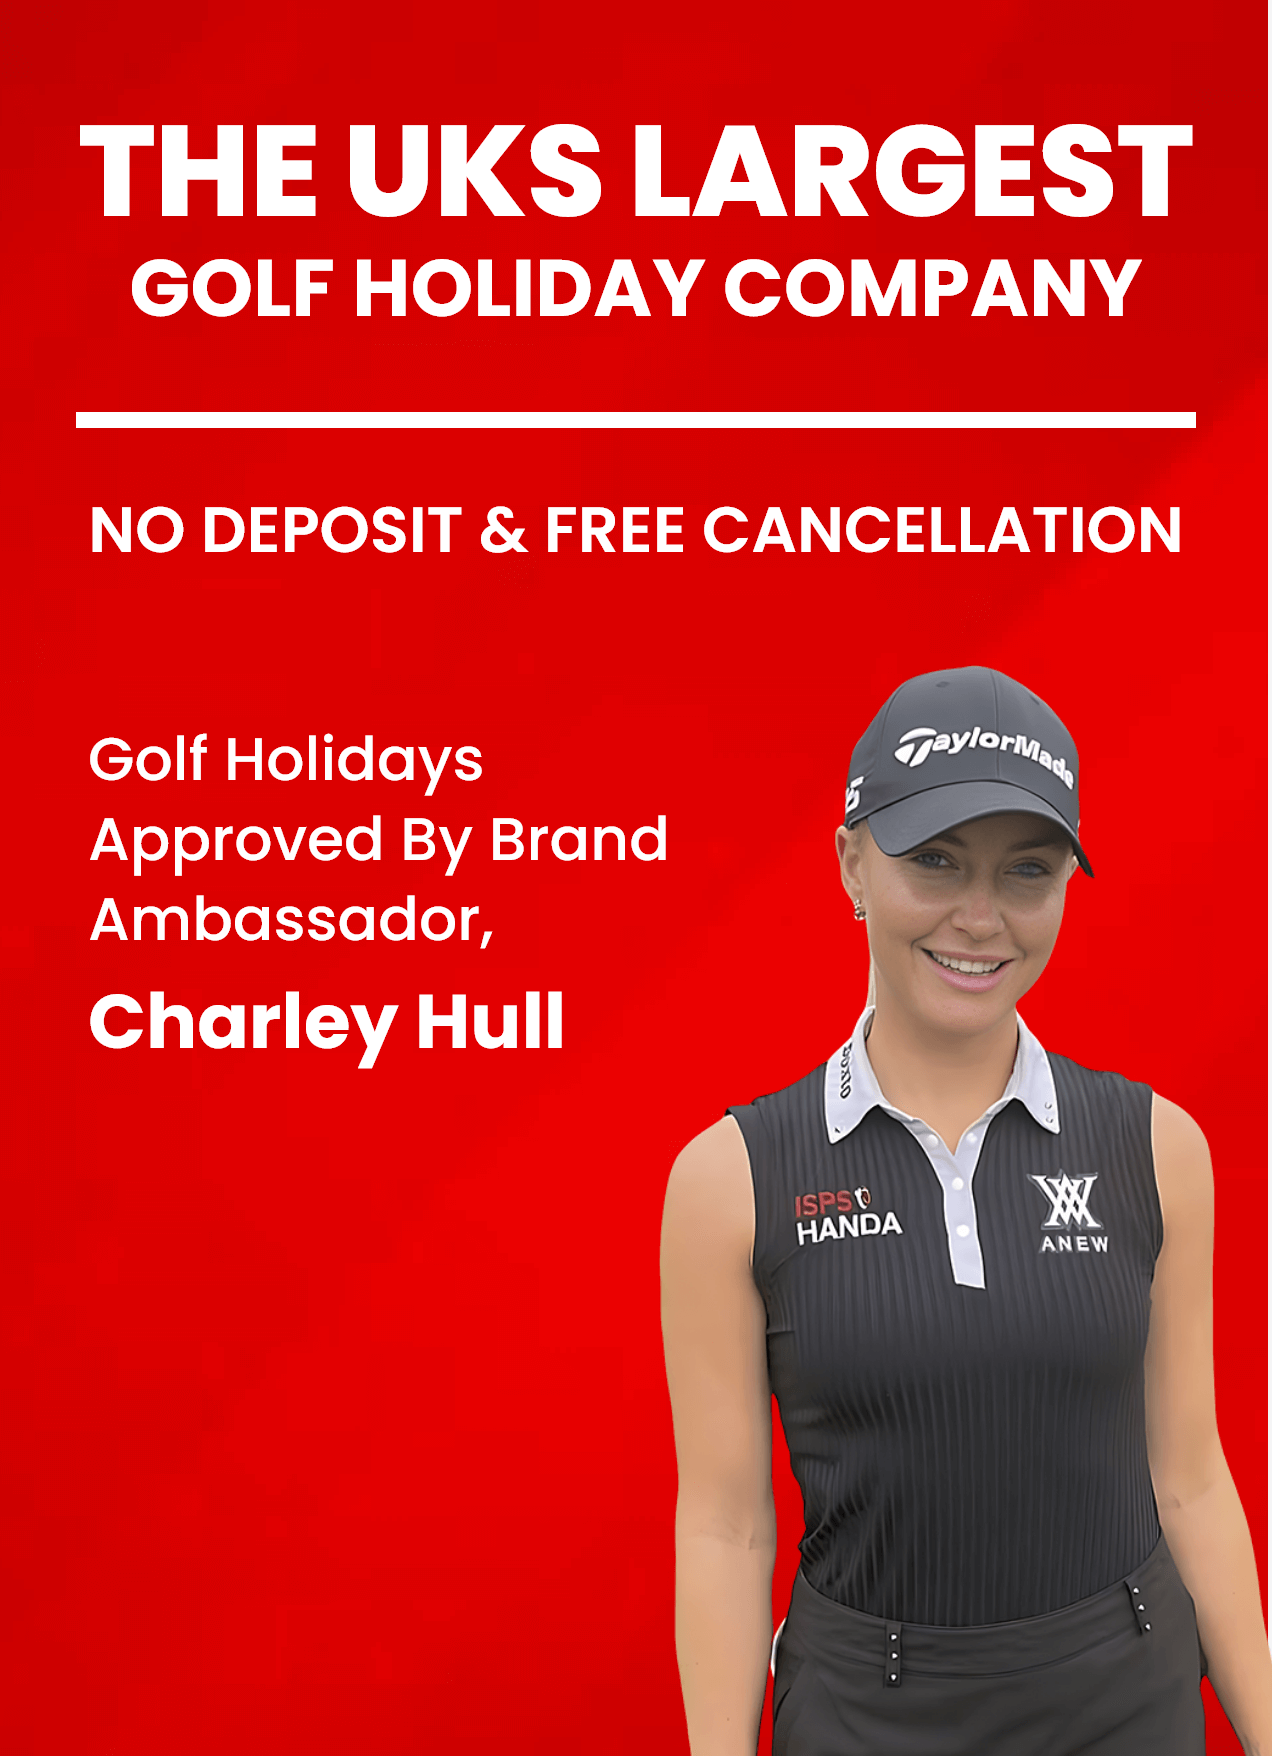 Charley Hull - Golf Holidays Direct Ambassador